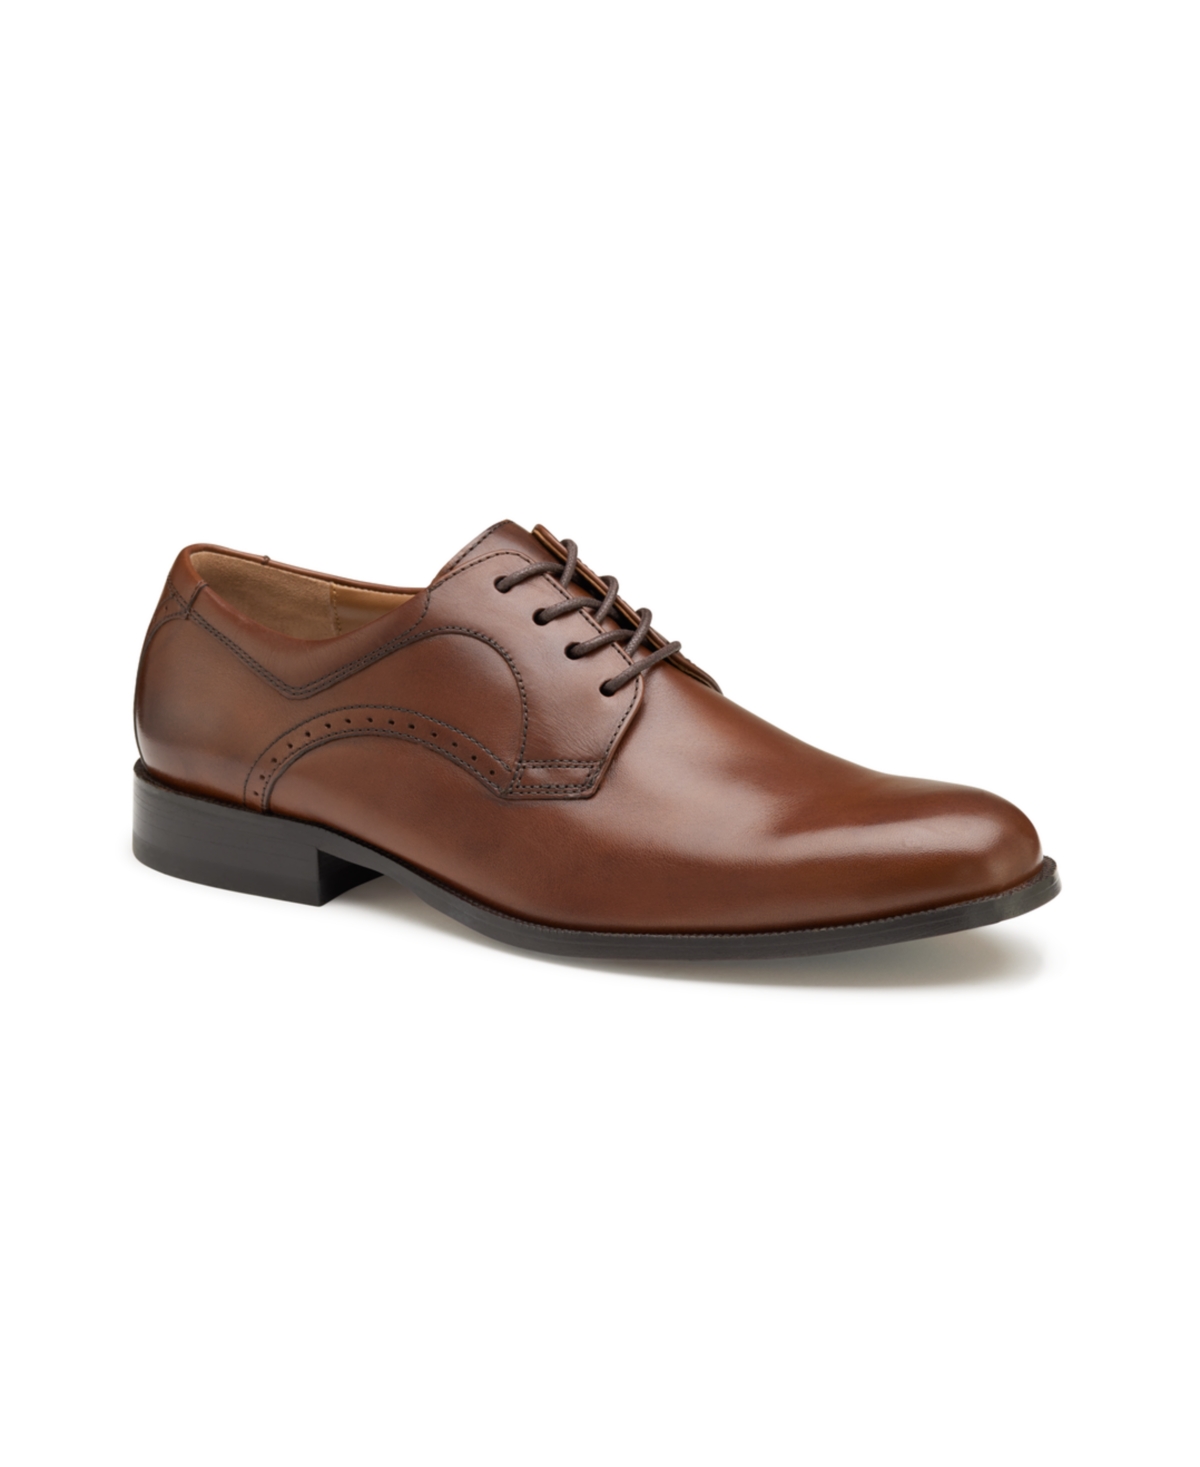 Johnston & Murphy Men's Harmon Plain Toe Oxford Shoes In Tan